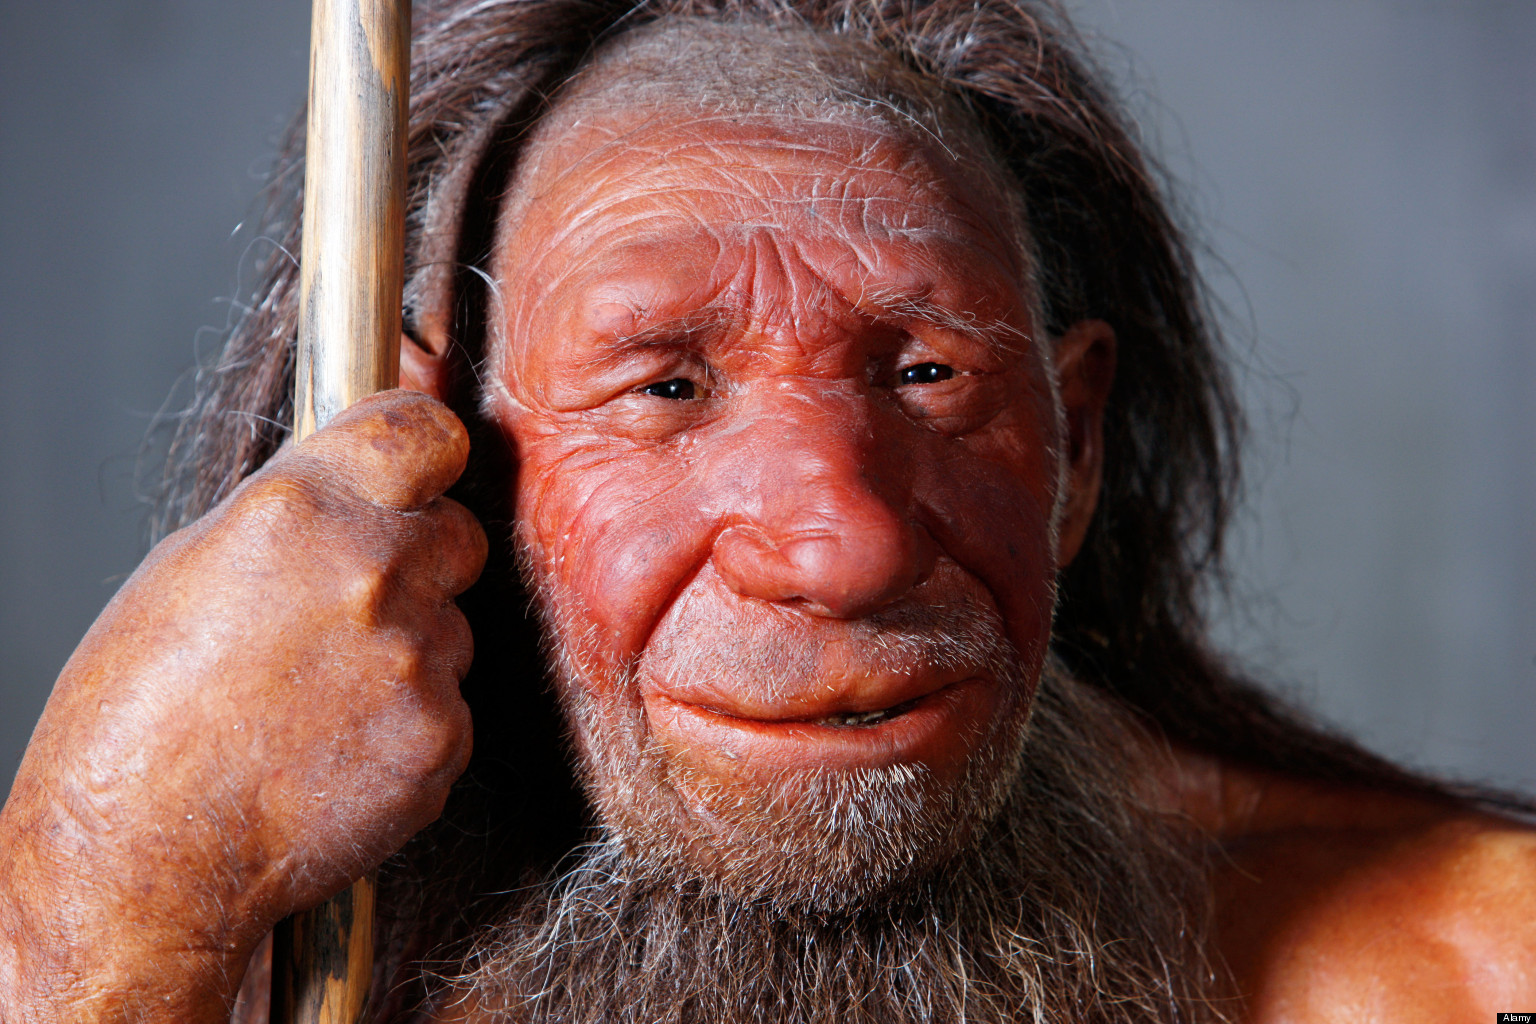 hith-neanderthal-die-out-earlier.jpg